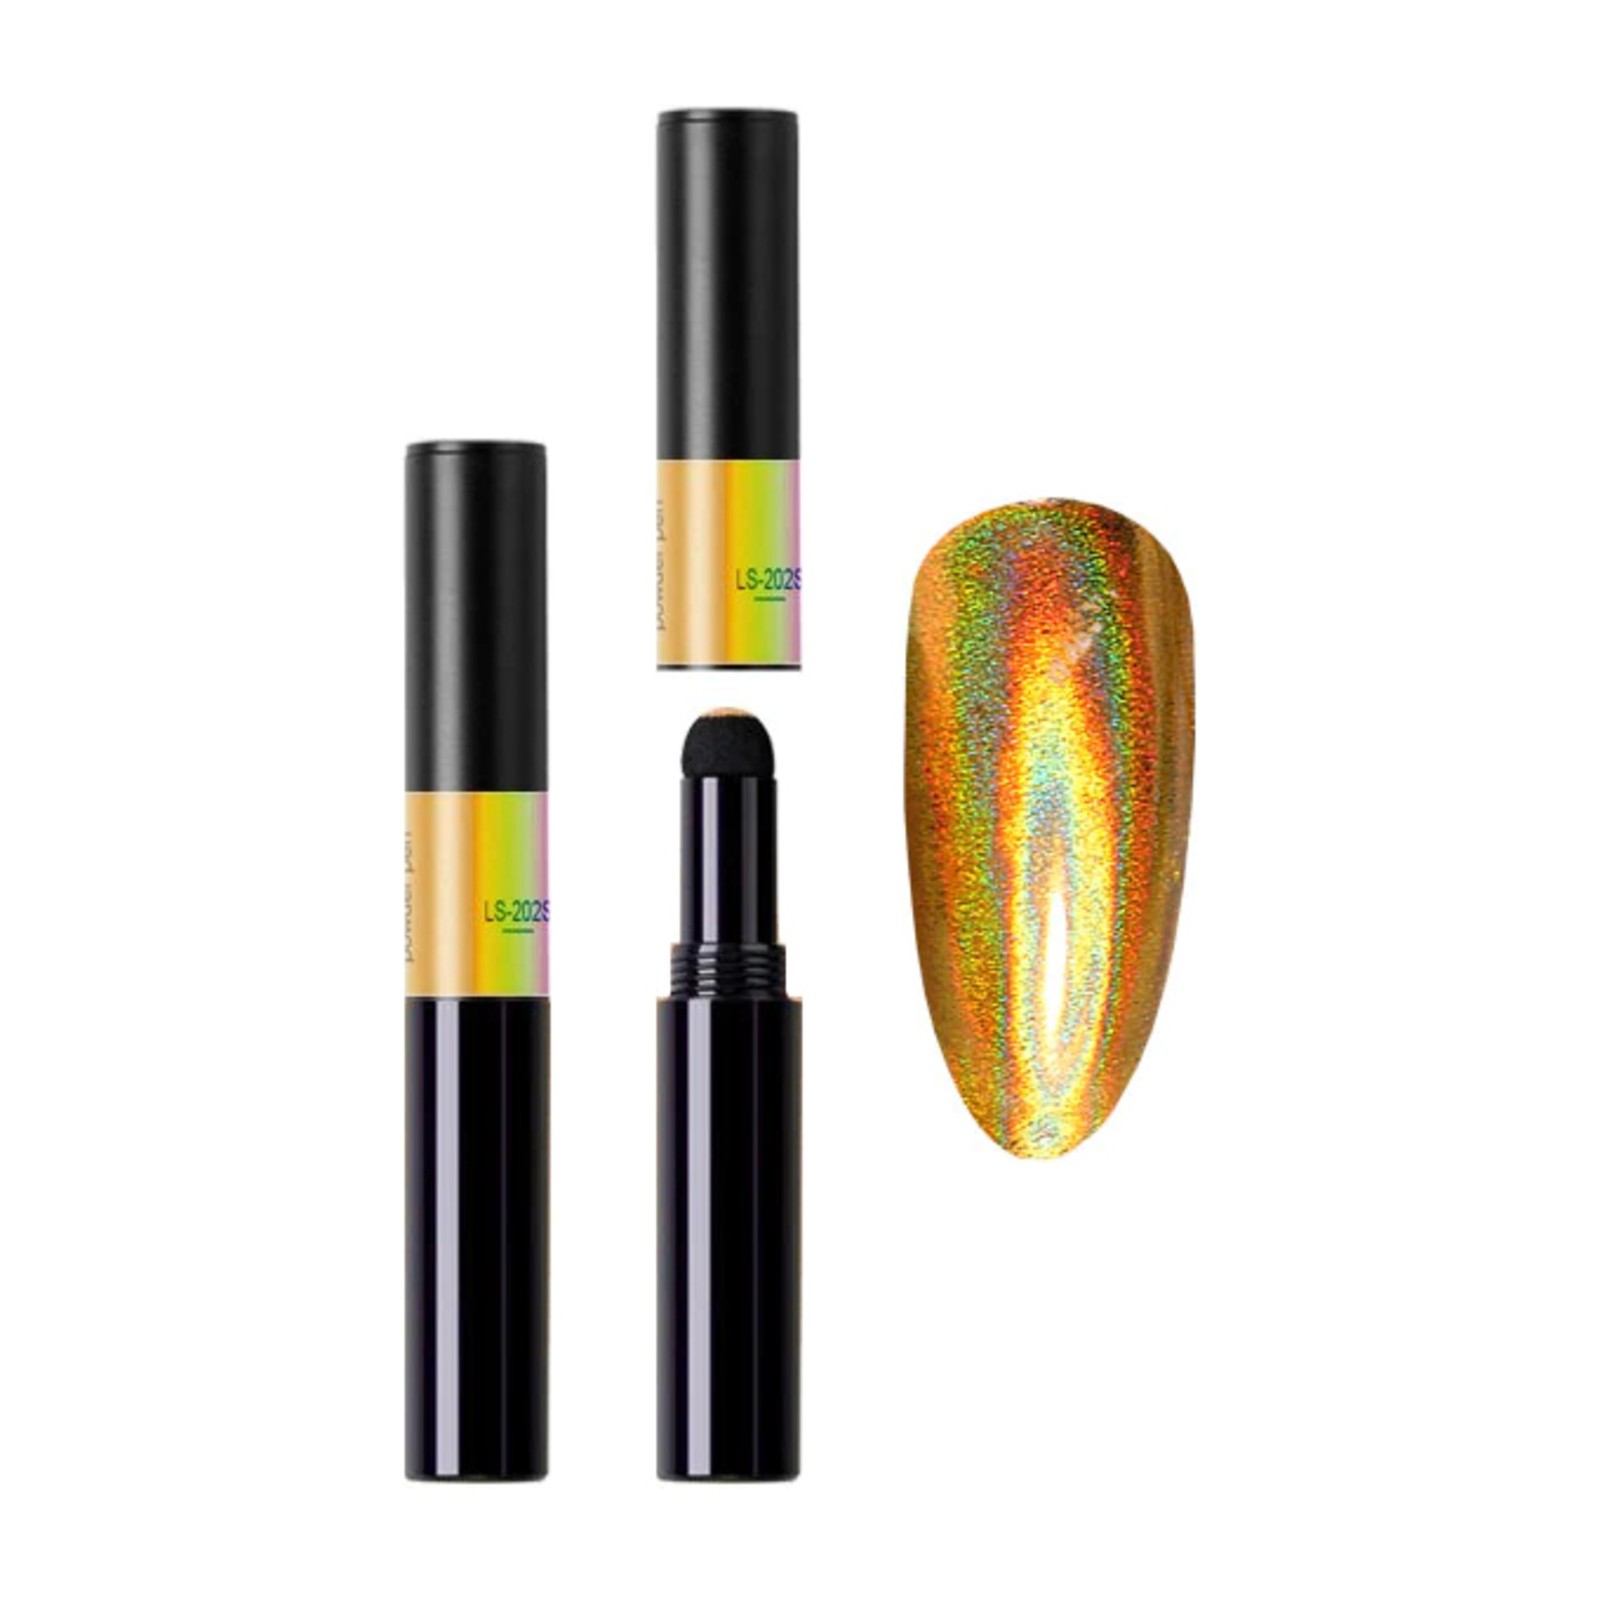 Venalisa -  Magischer Pulverstift -  LS-202S Gold